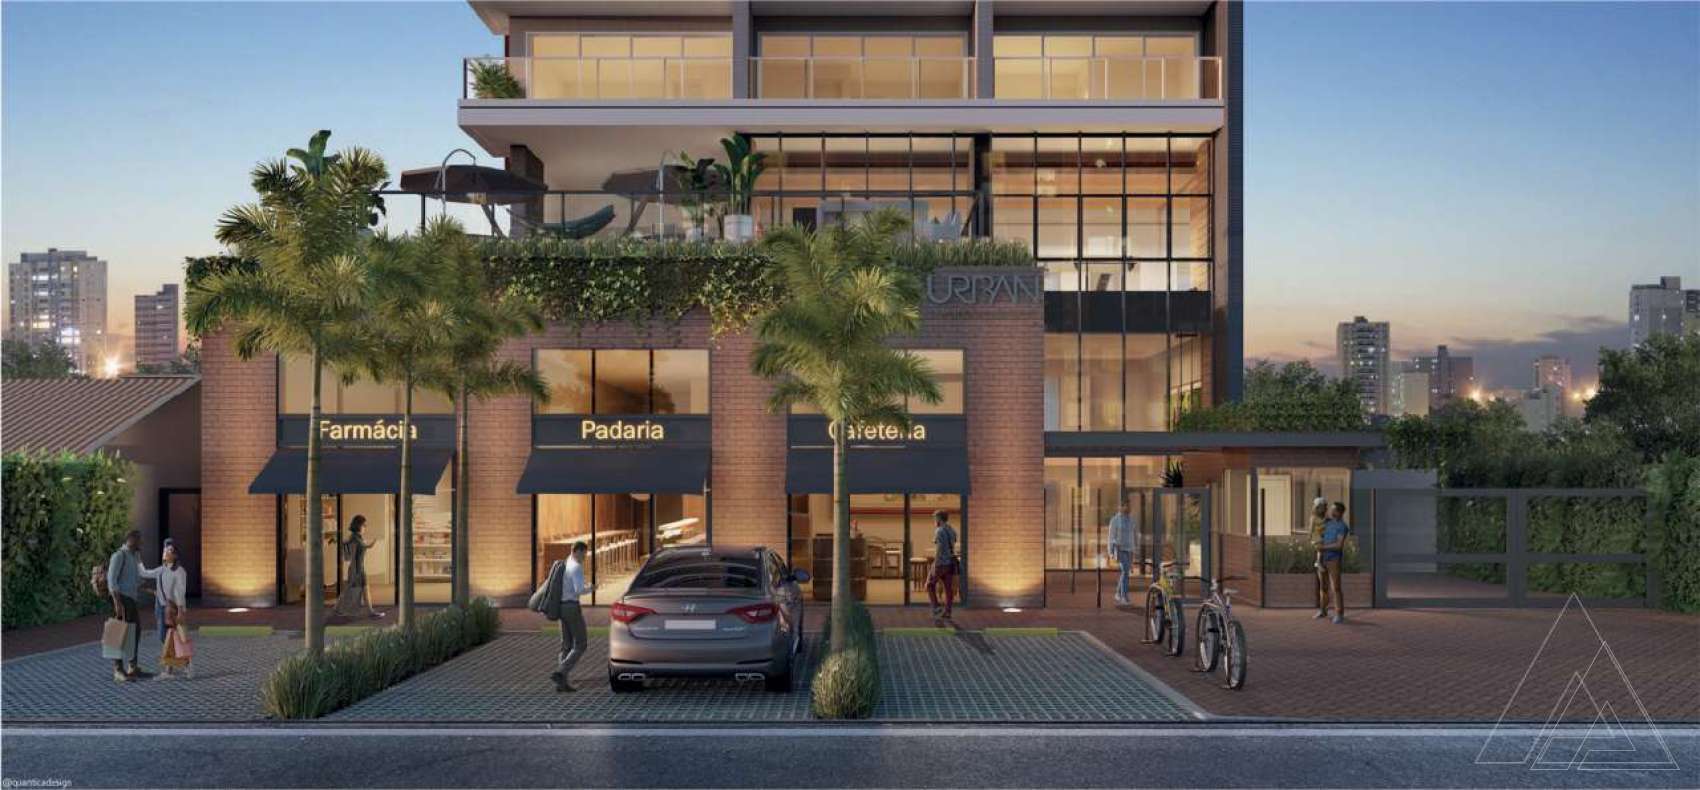 Urban Caminho das Árvores - Apartamento com 1 quarto, de 29m² à venda R$ 396.000,00